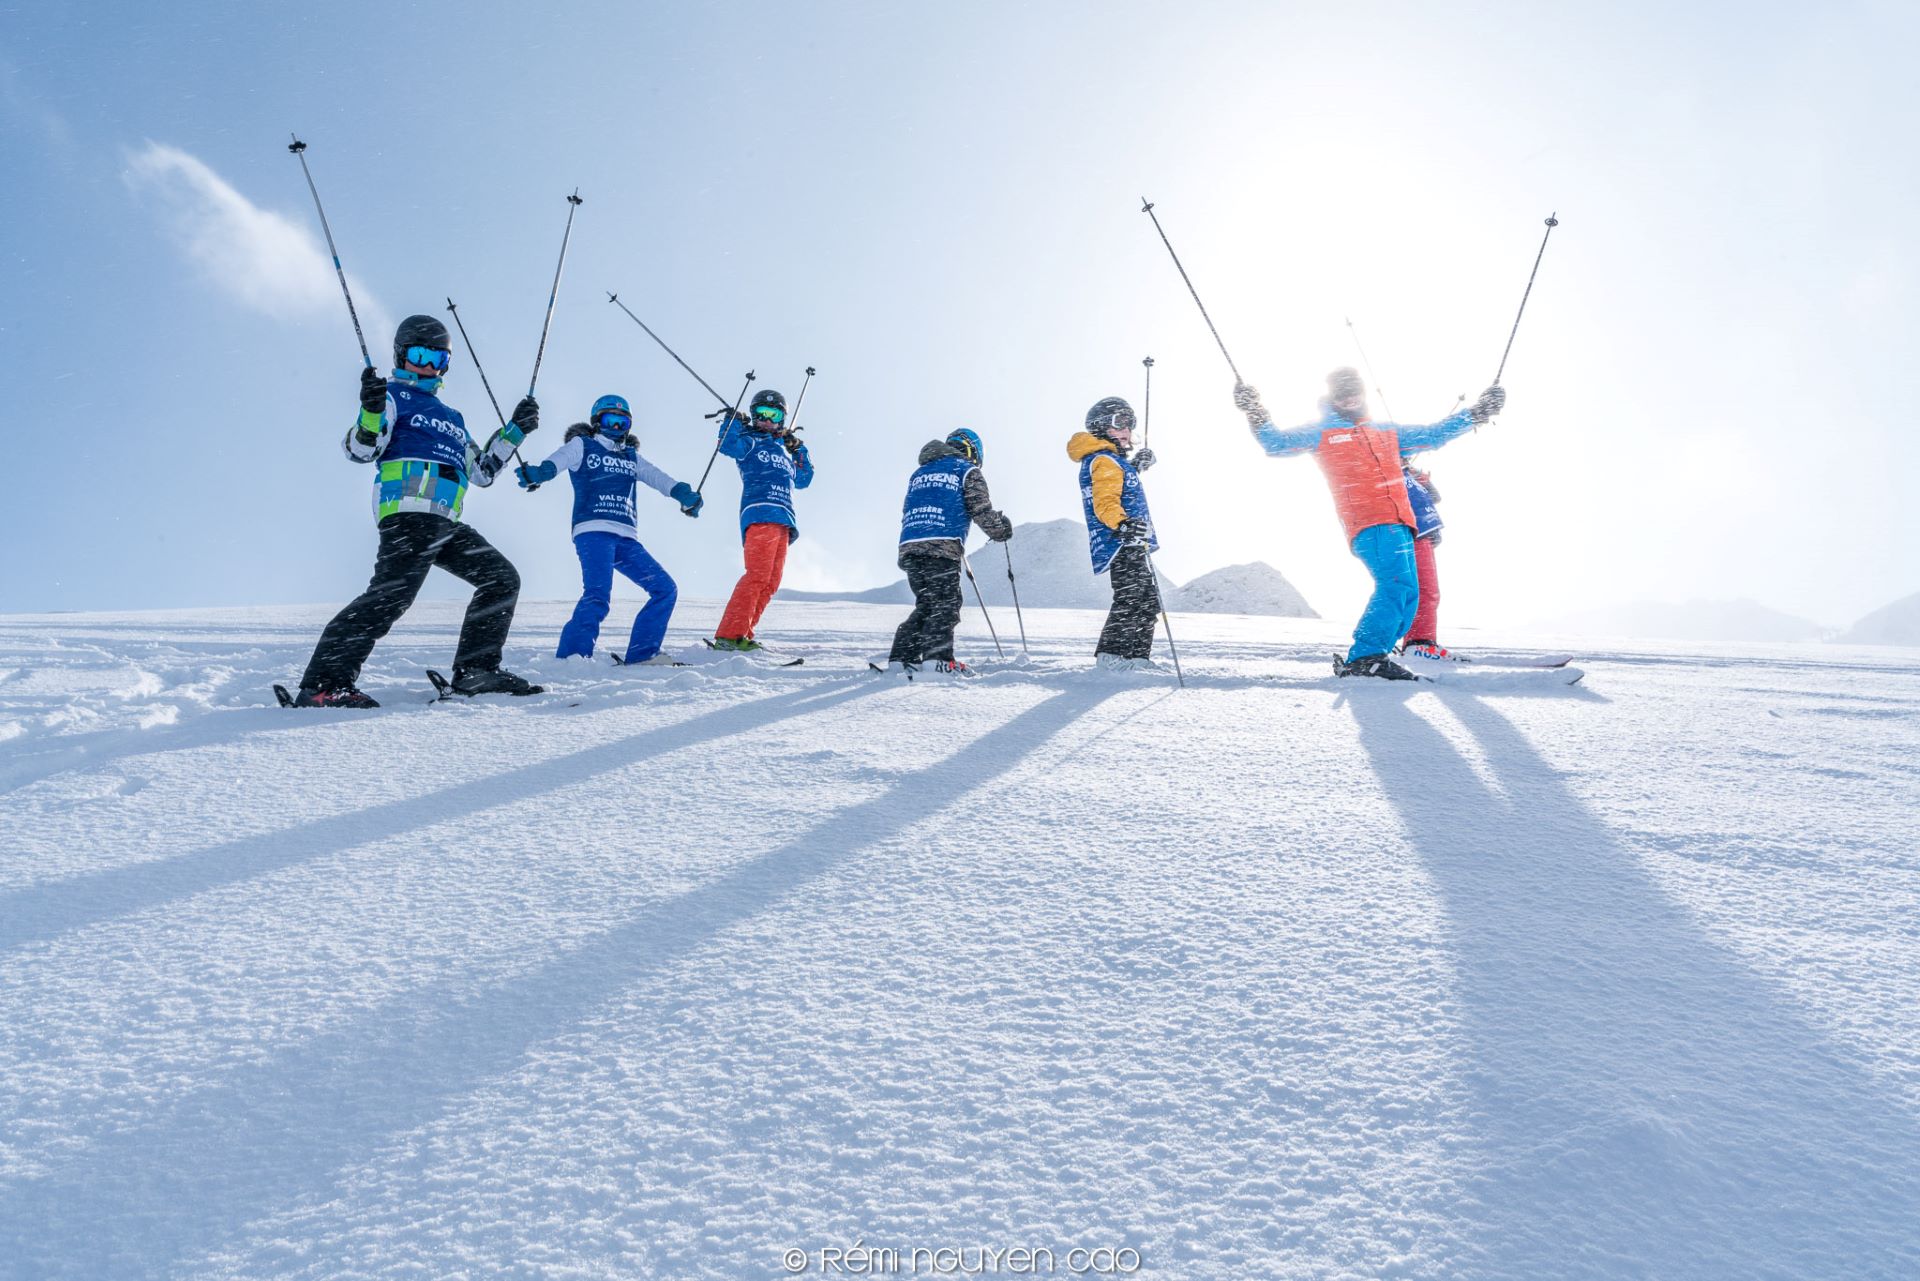 collective-lesson-oxygene-ski-snowboard-school-2521067 - © Oxygène Ski & Snowboard School